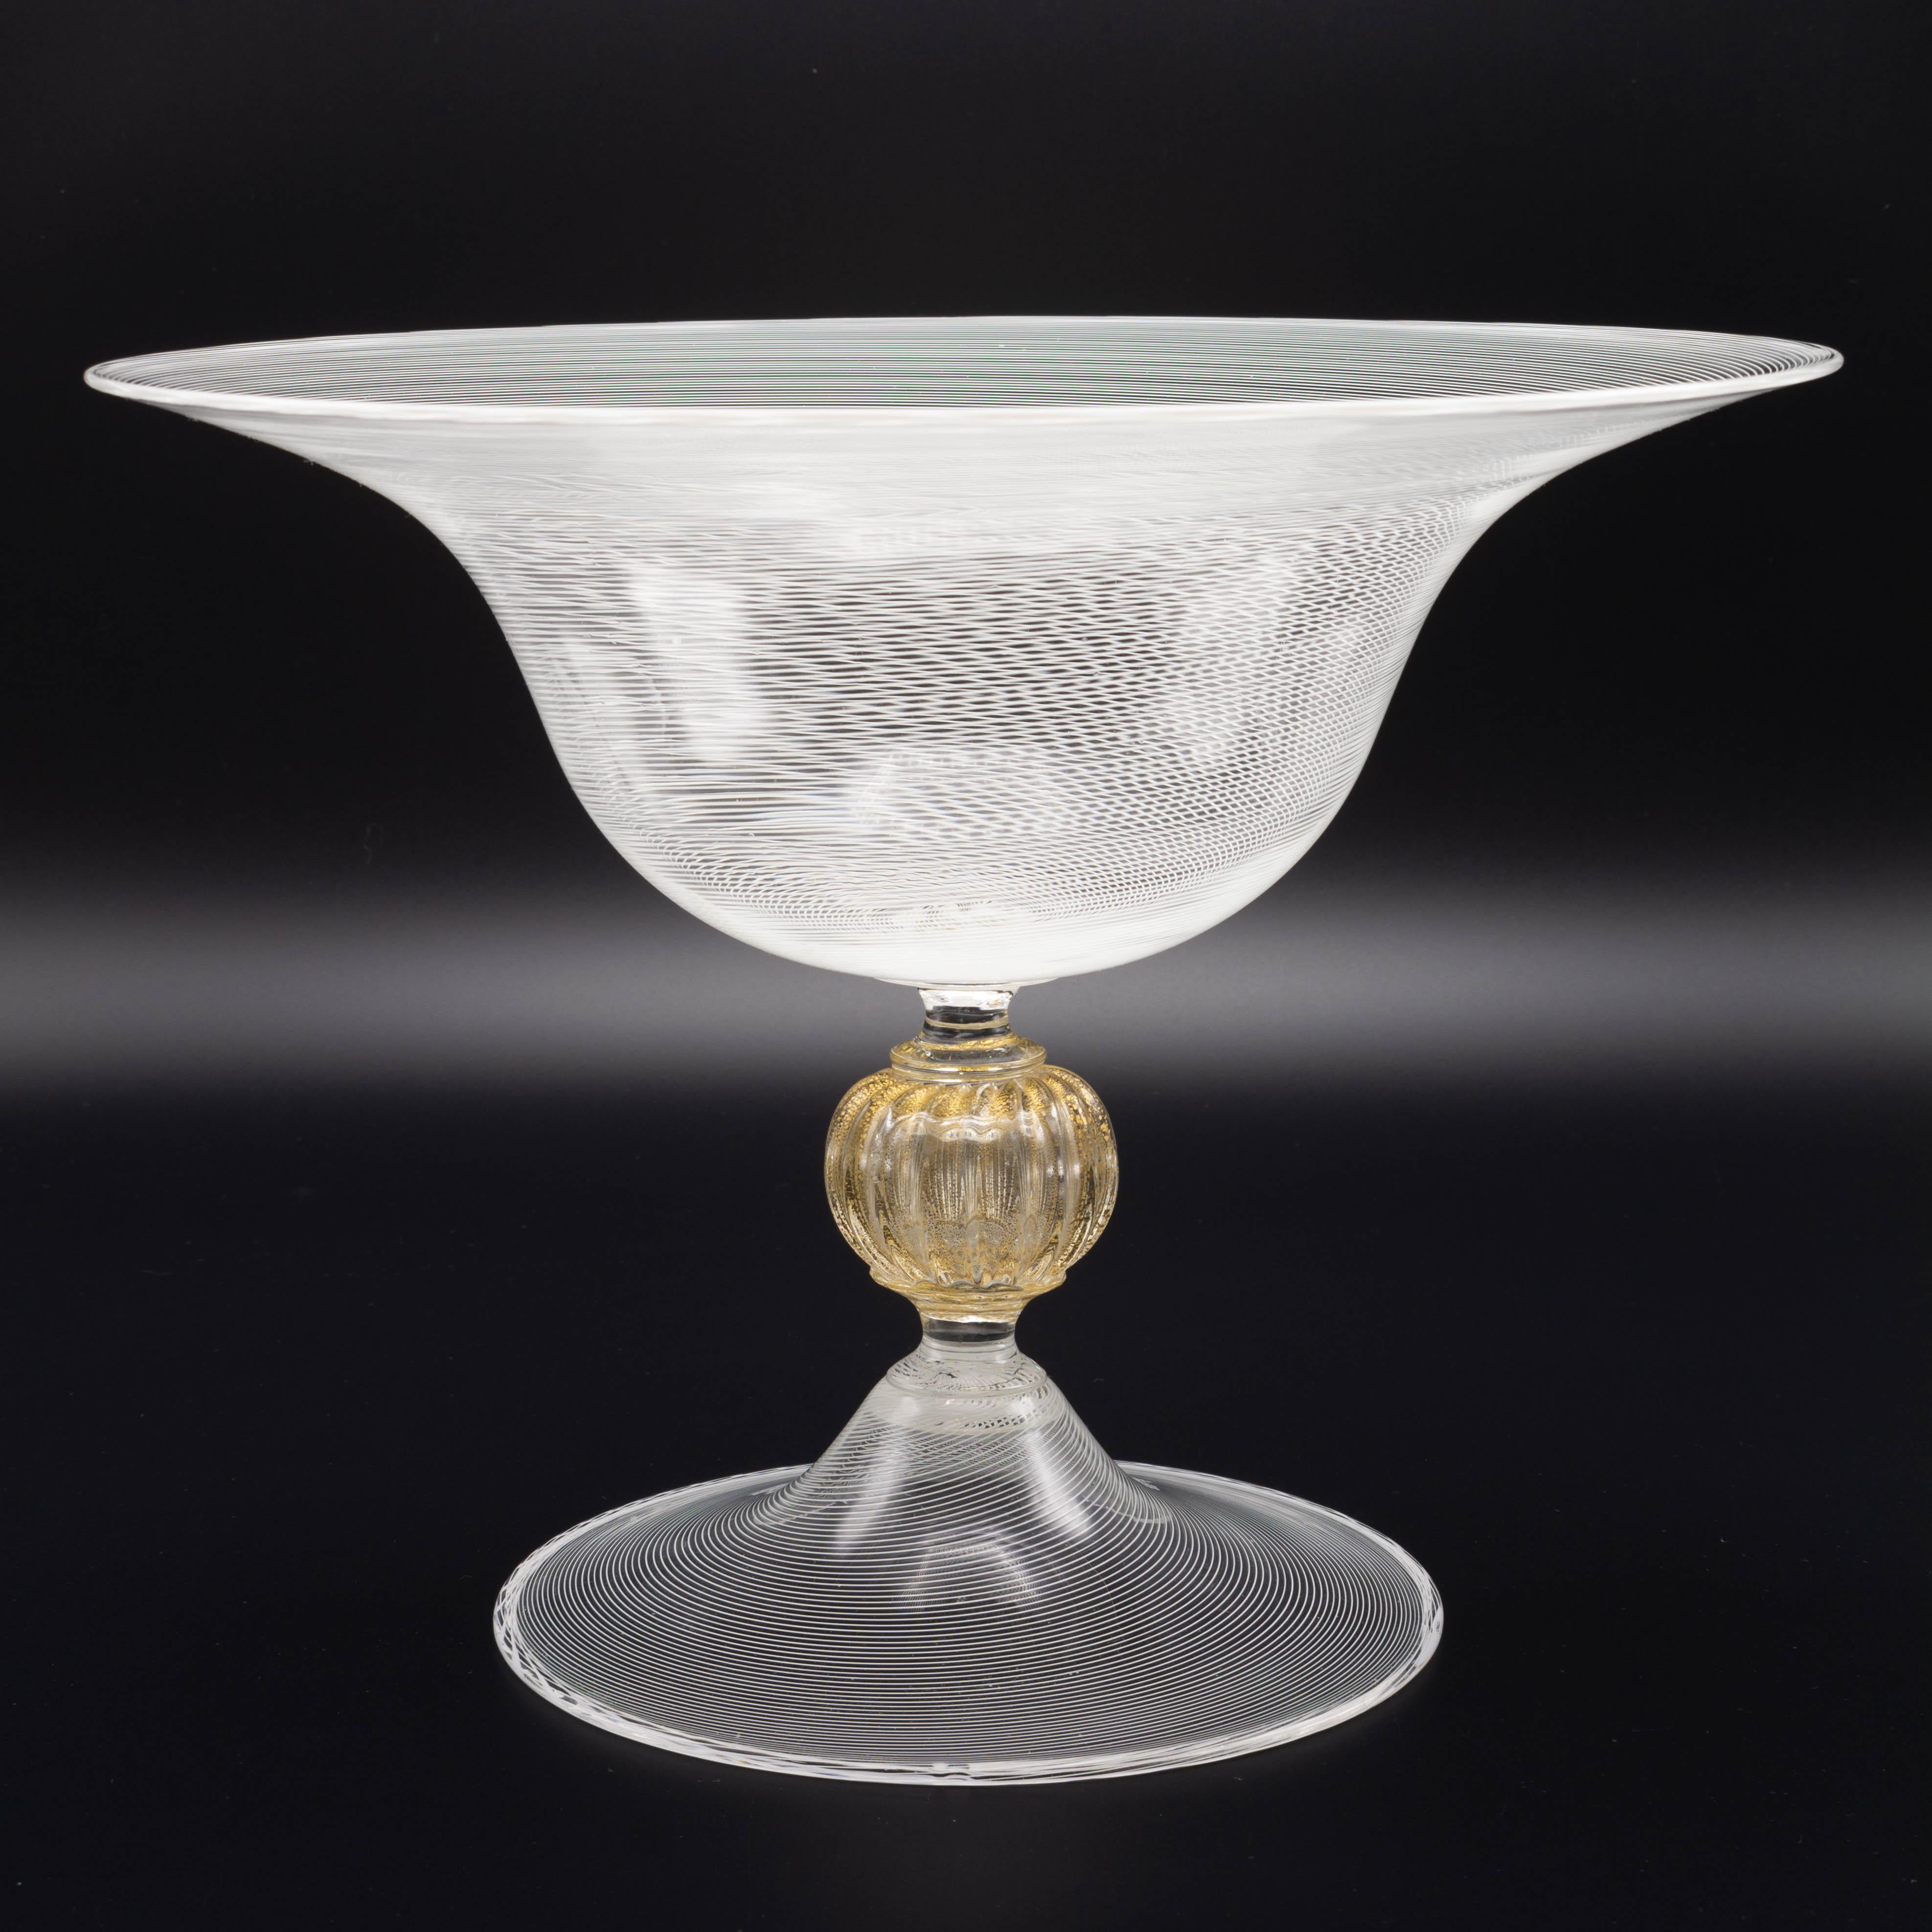 Un bol ou tazza à pied en verre de Murano datant du milieu du siècle, attribué à Seguso. Ce grand bol présente un filigrane linéaire fin, une tige centrale à bouton nervuré moucheté d'or et une base à pied évasé. Mesures : 9